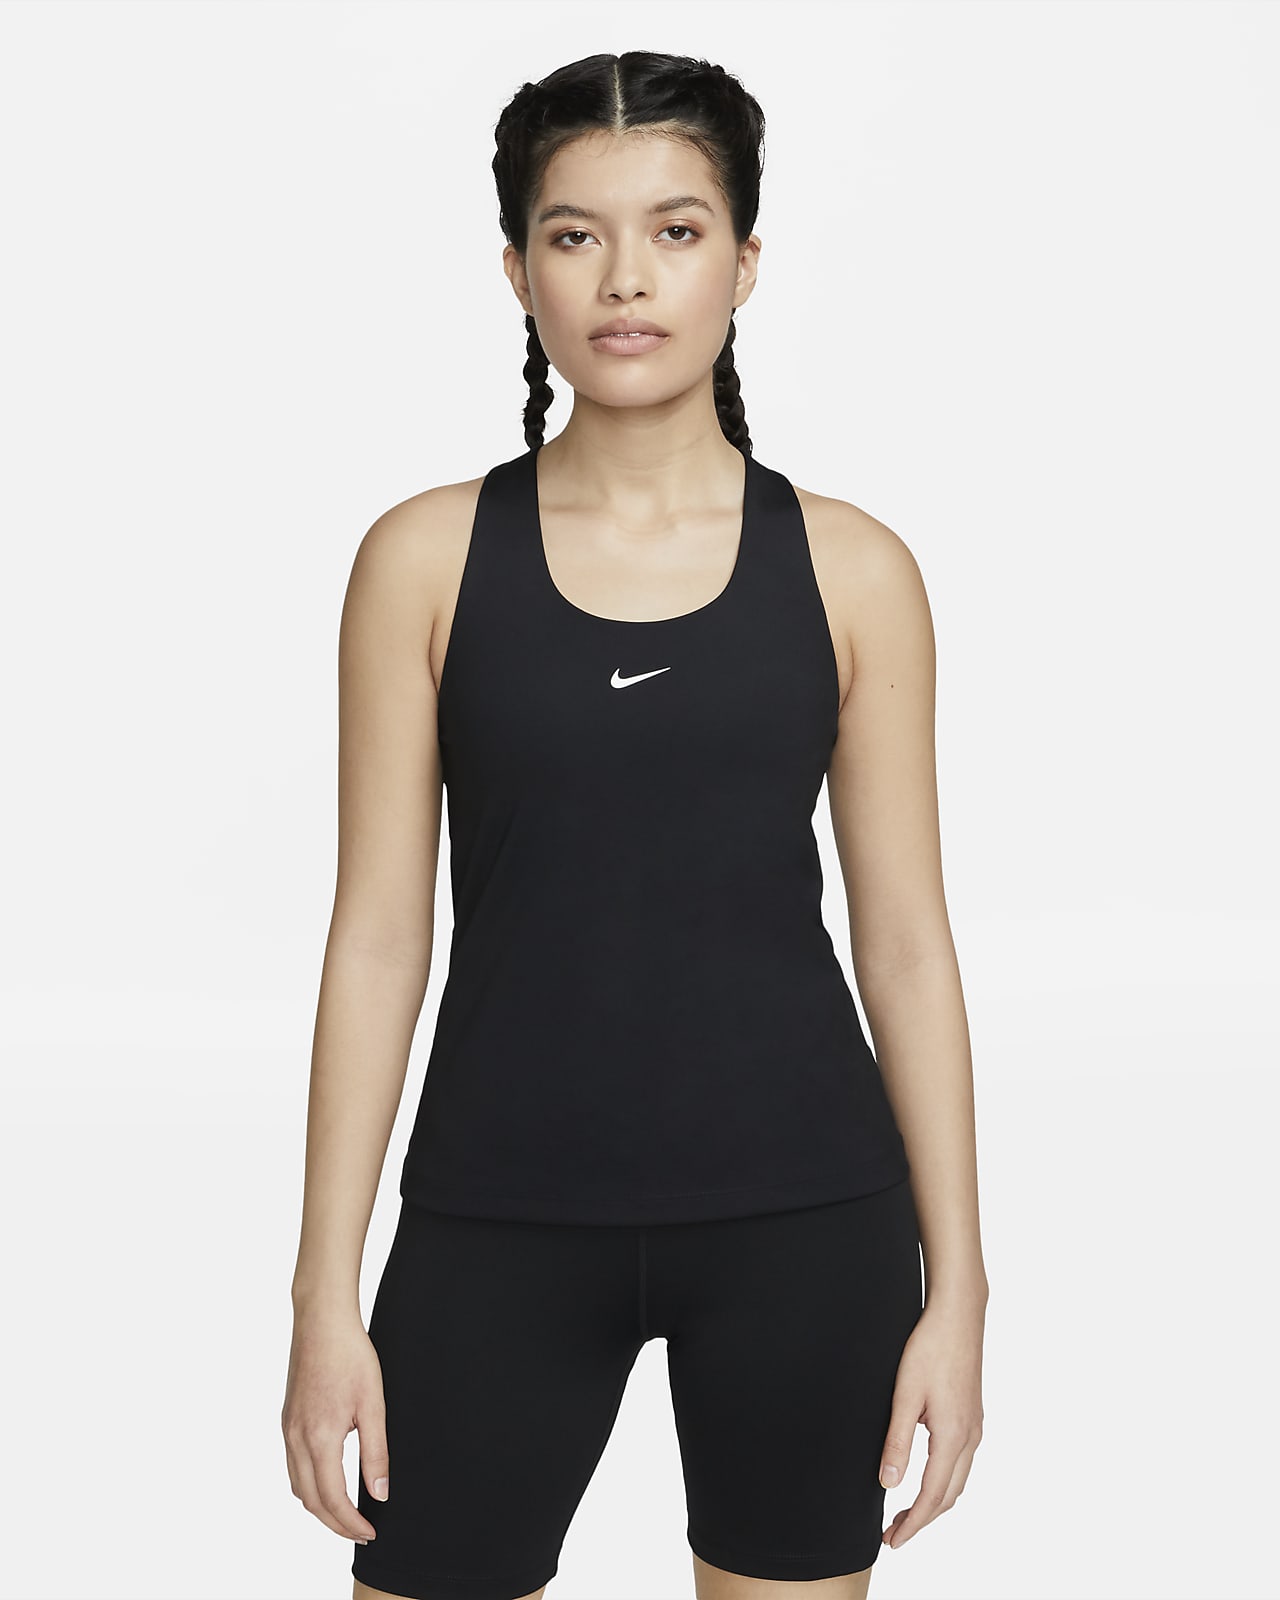 Nike Swoosh 女子中强度支撑速干衬垫运动内衣式背心